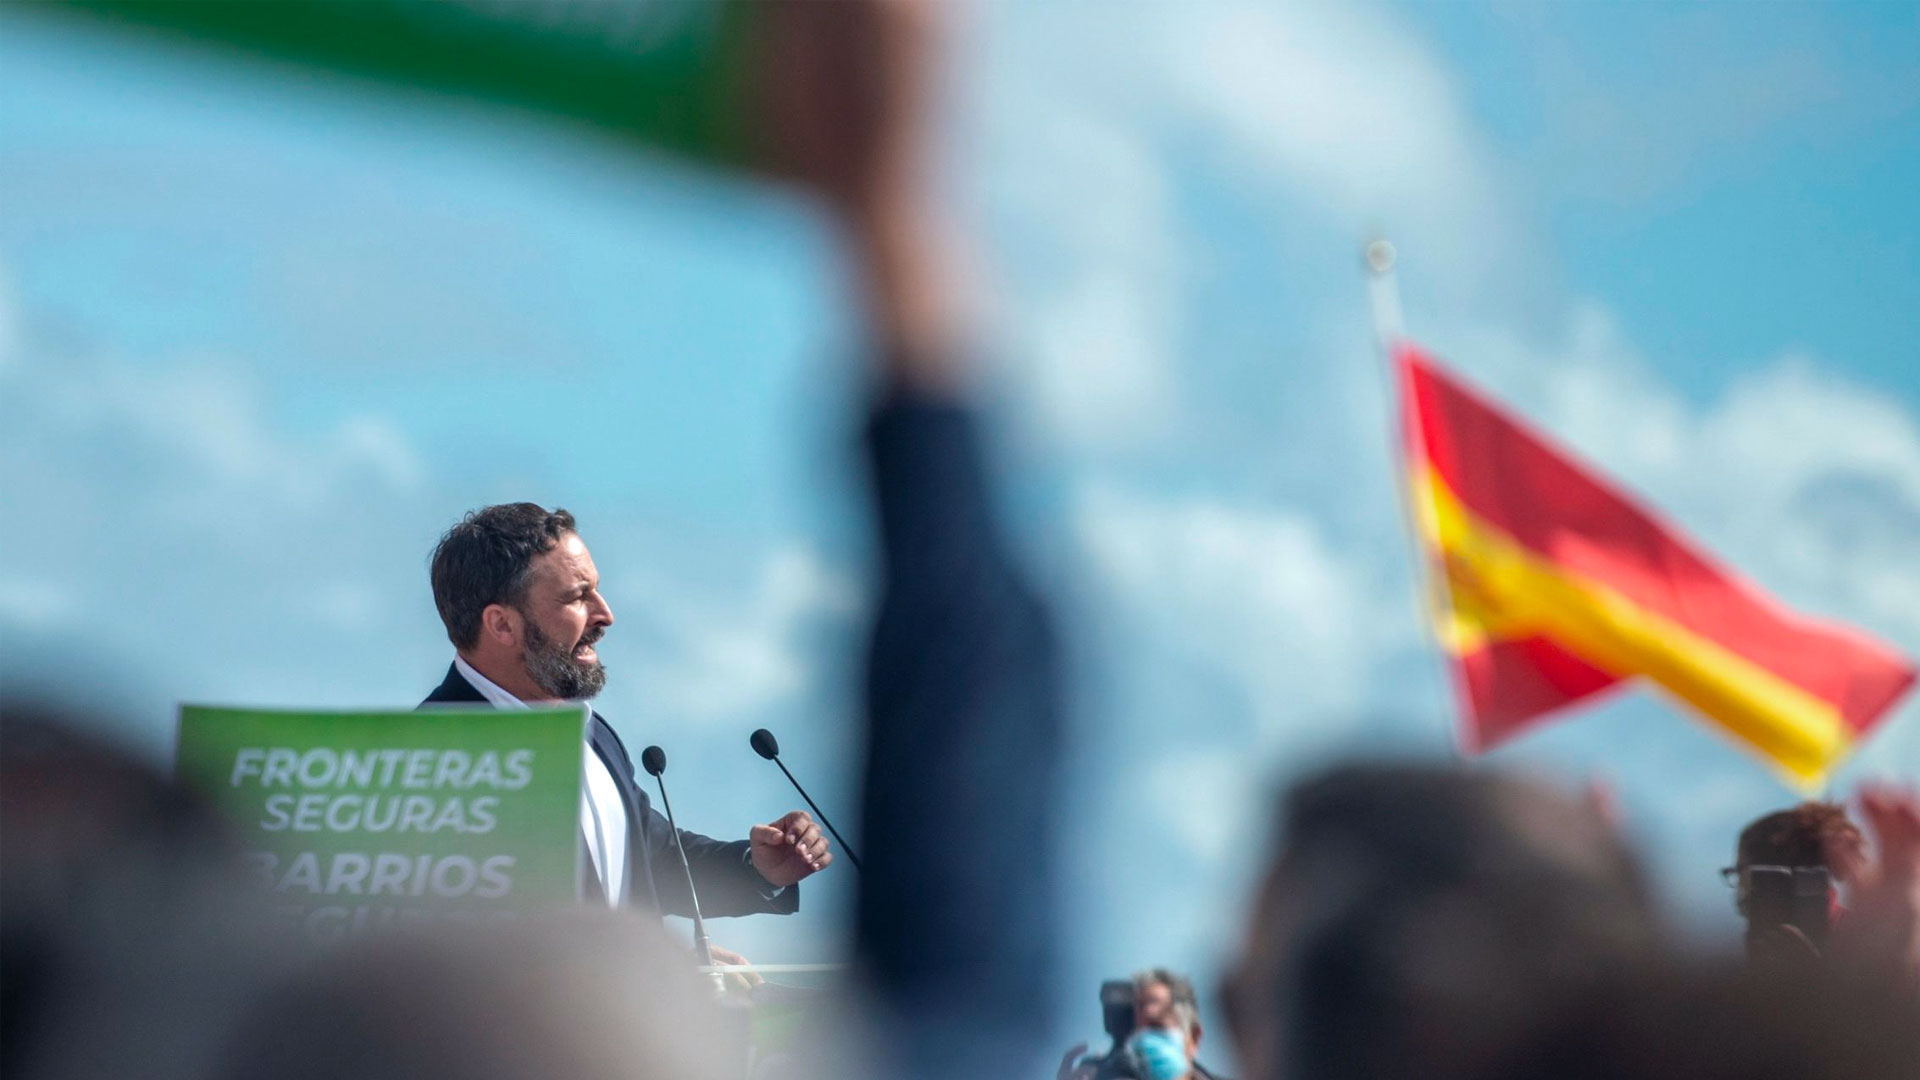 Santiago Abascal en un mitin con el título ‘Fronteras seguras’